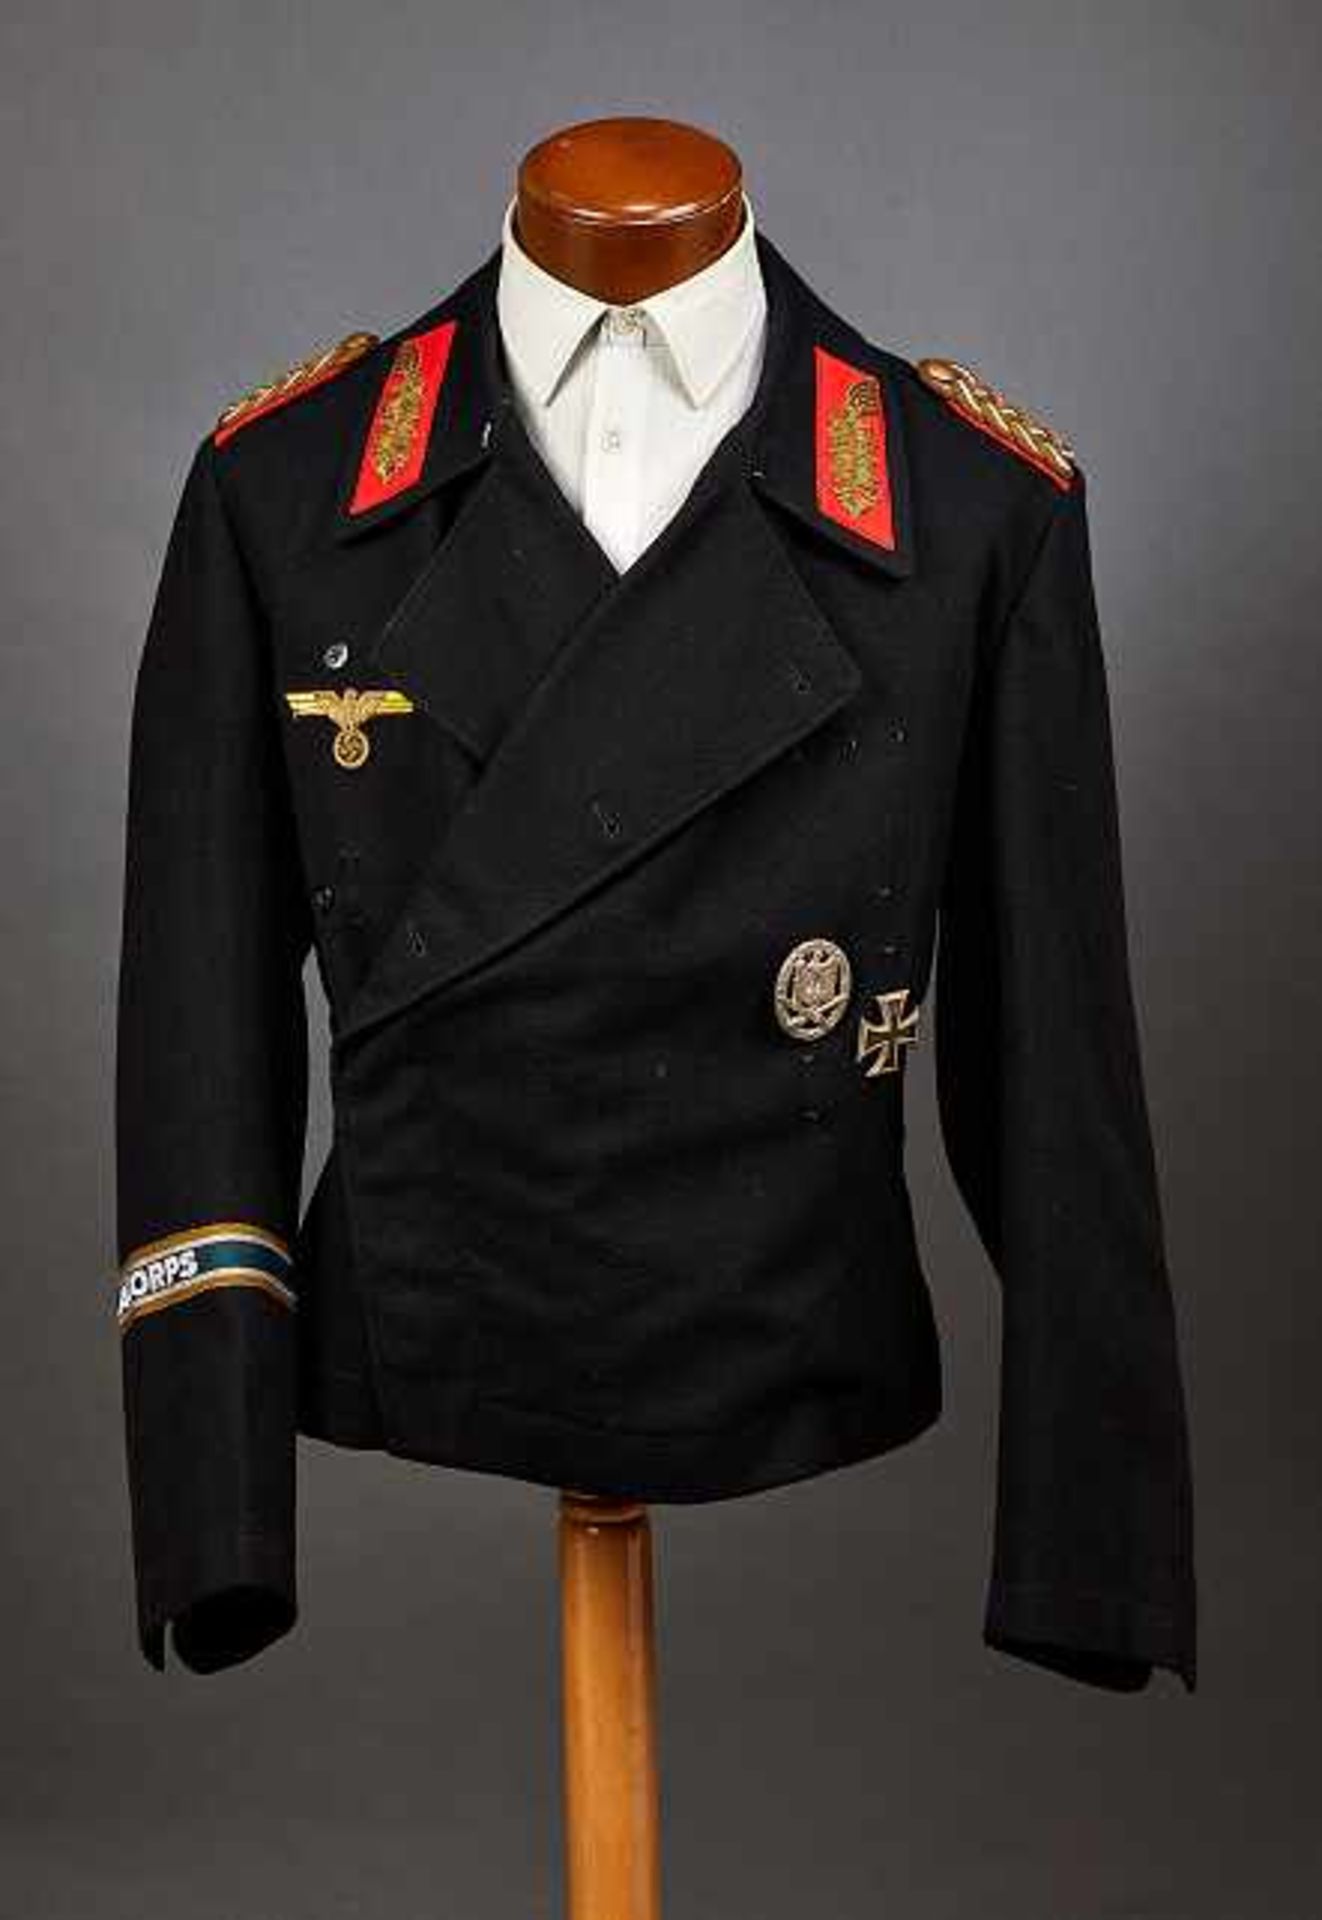 Deutsches Reich 1933 - 1945 - Heer - Generalität : Army Panzer Crewman Uniform "Wrapper" with